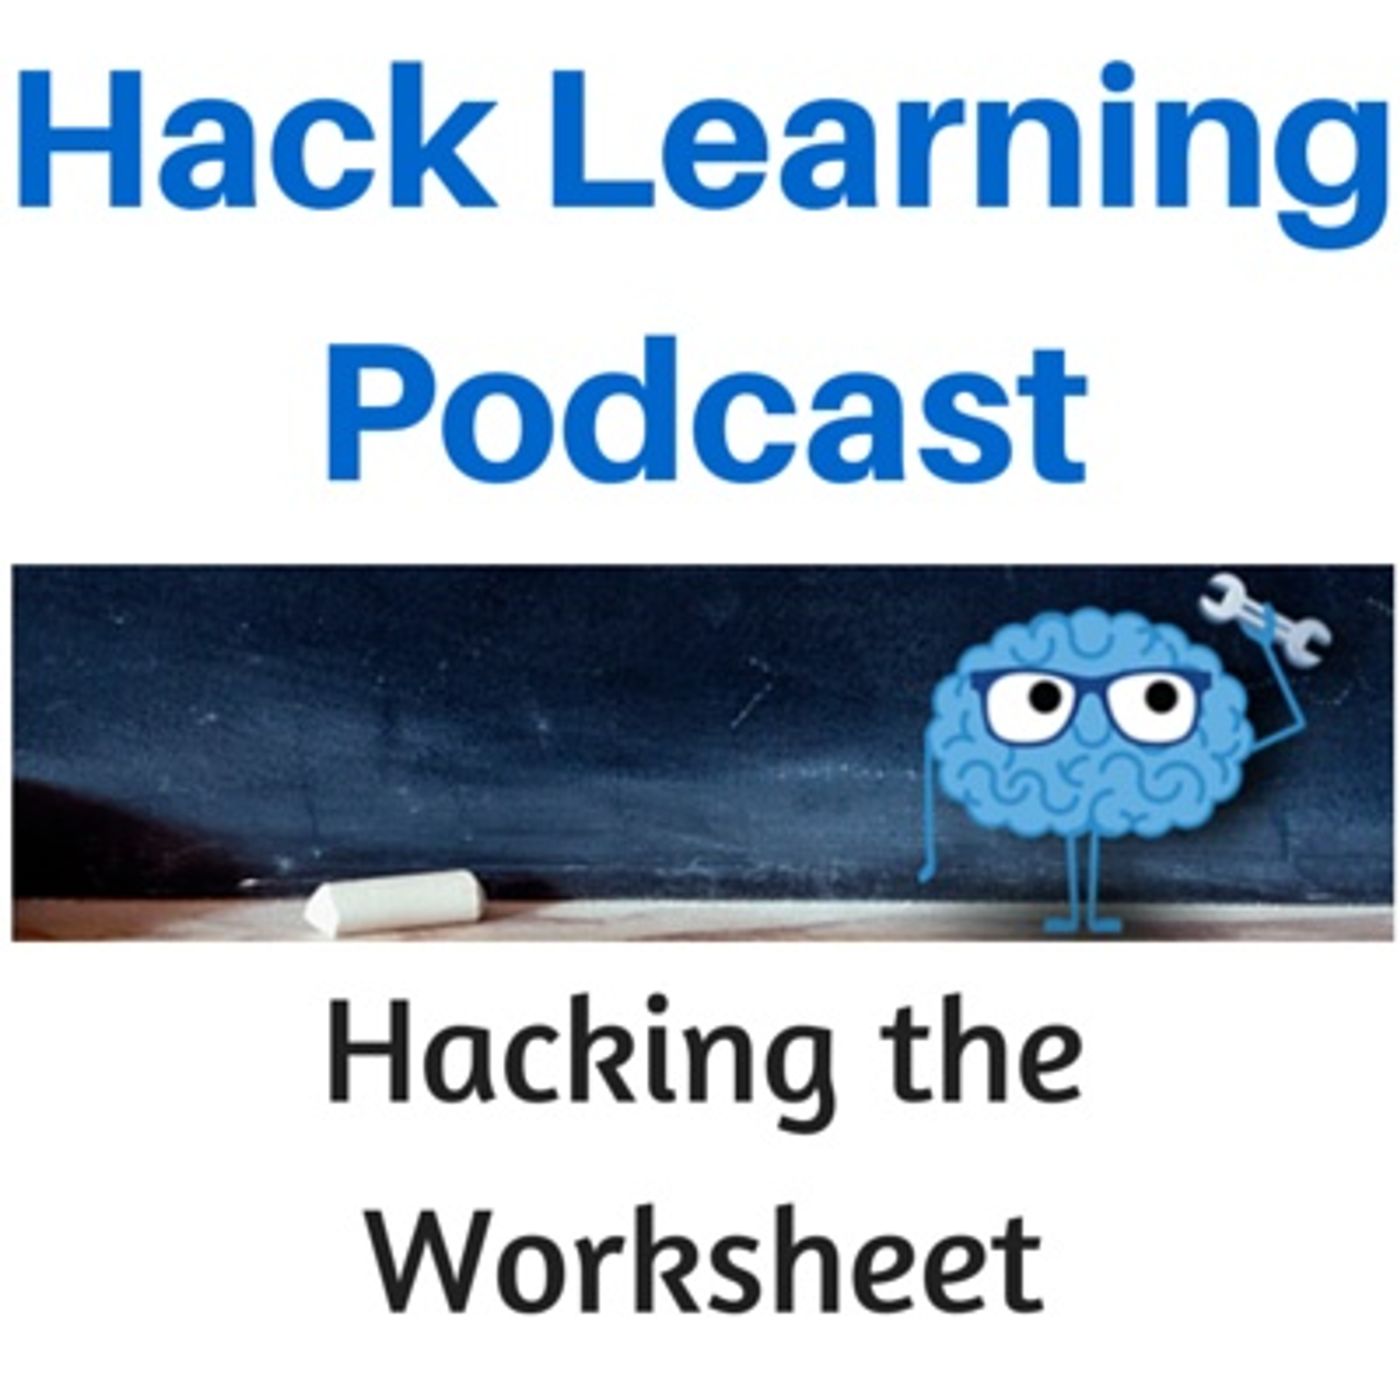 Hacking the Worksheet